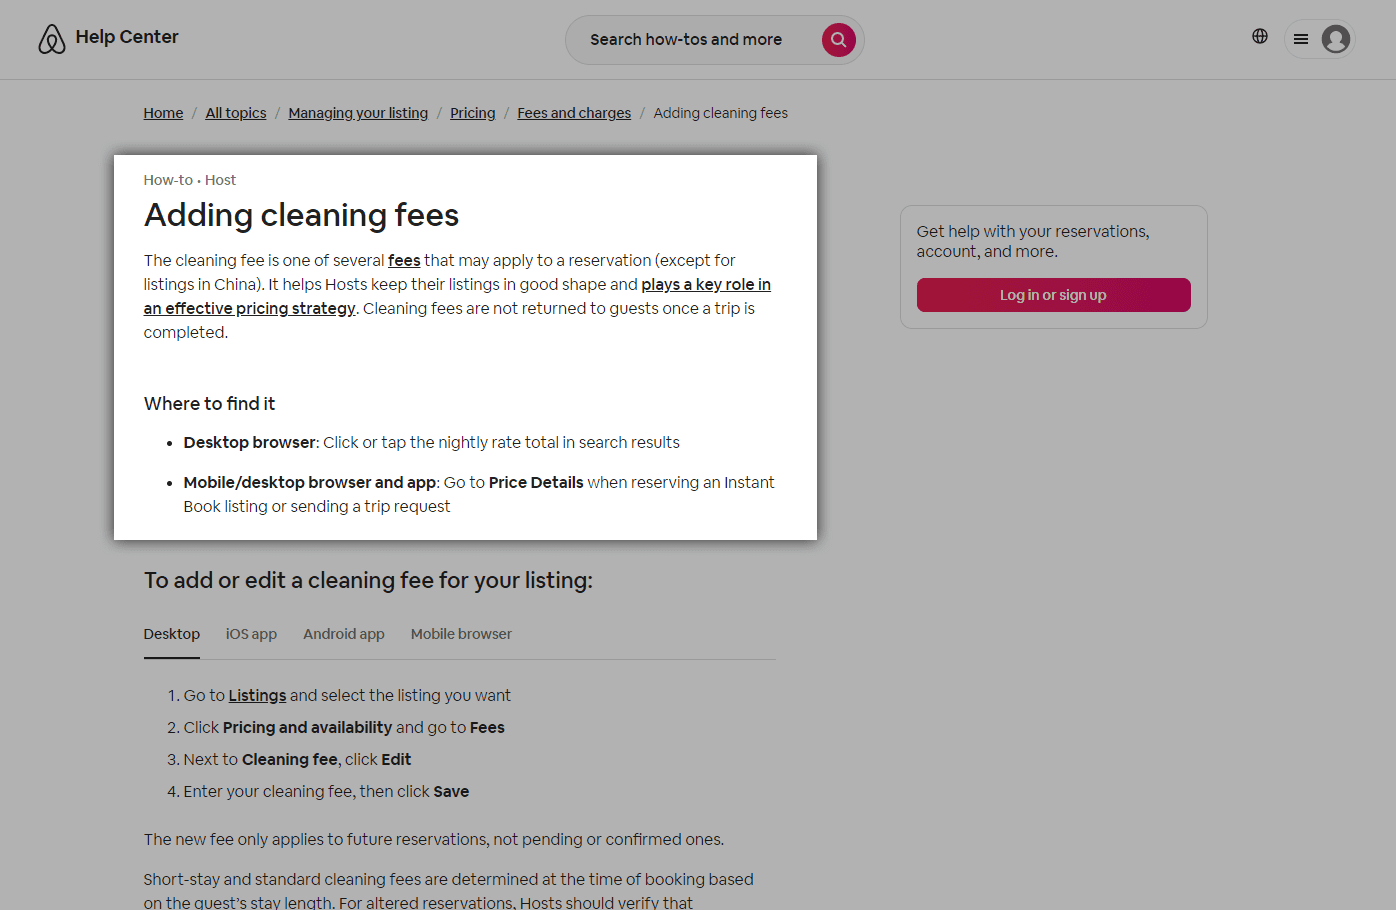 Screenshot of Airbnb help center website